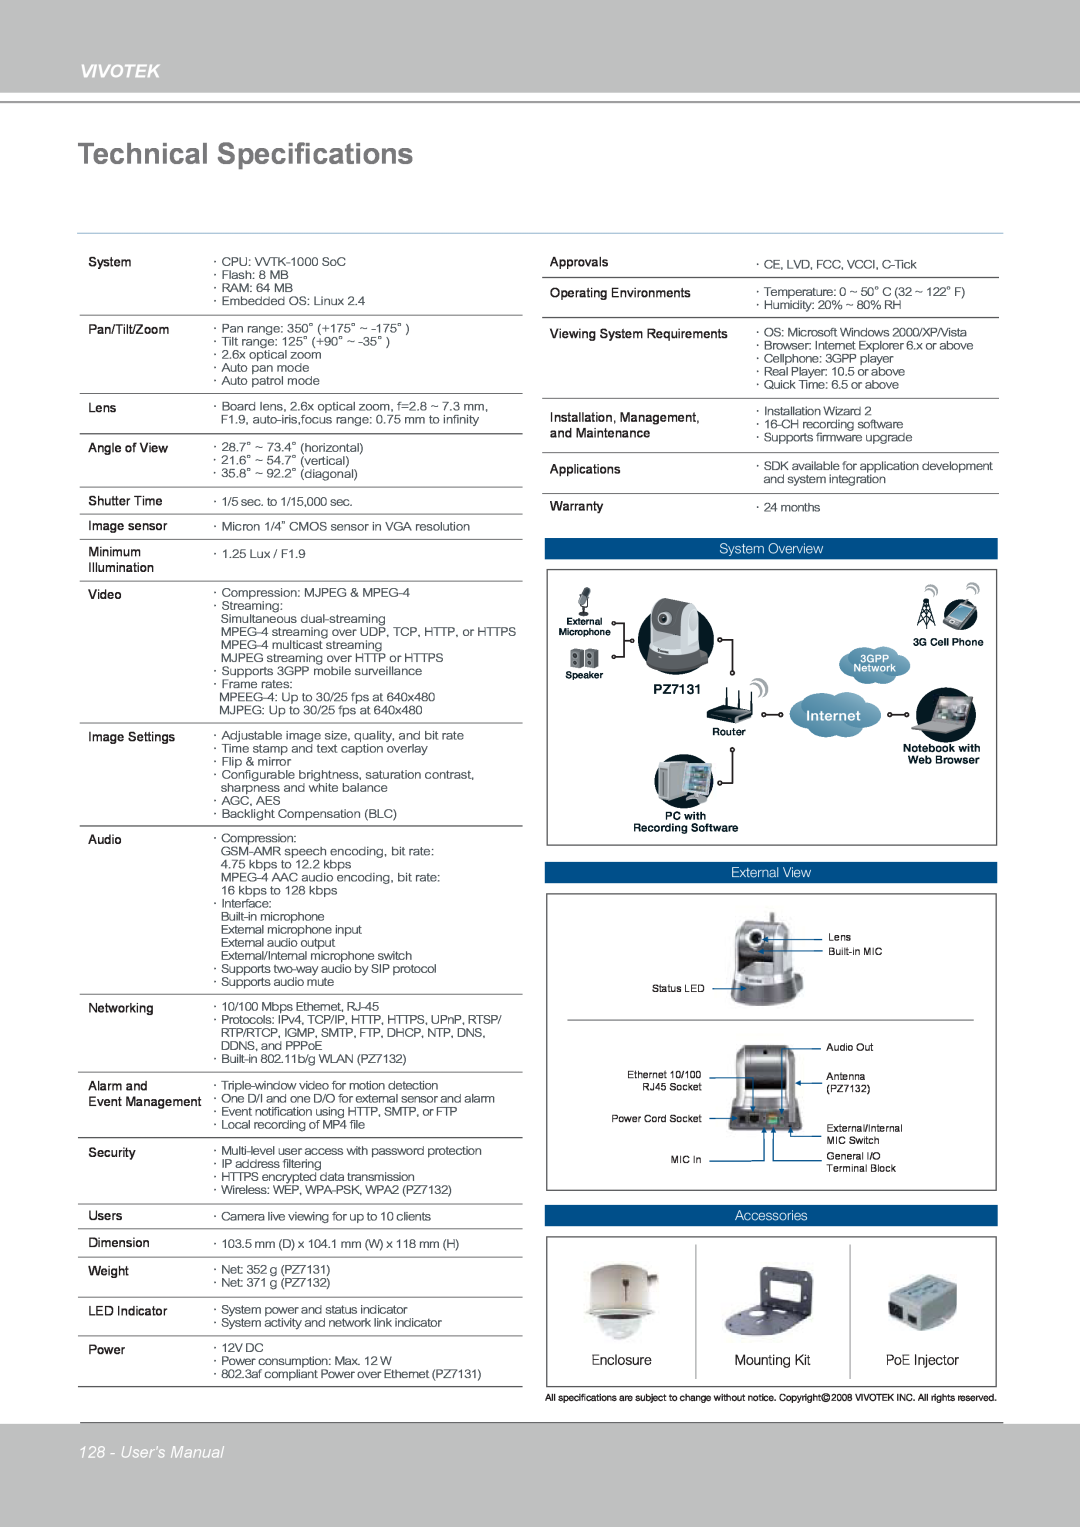 Vivotek PZ7132 manual Technical Specifications, Vivotek, Users Manual, System Overview, PZ7131, External View, Accessories 